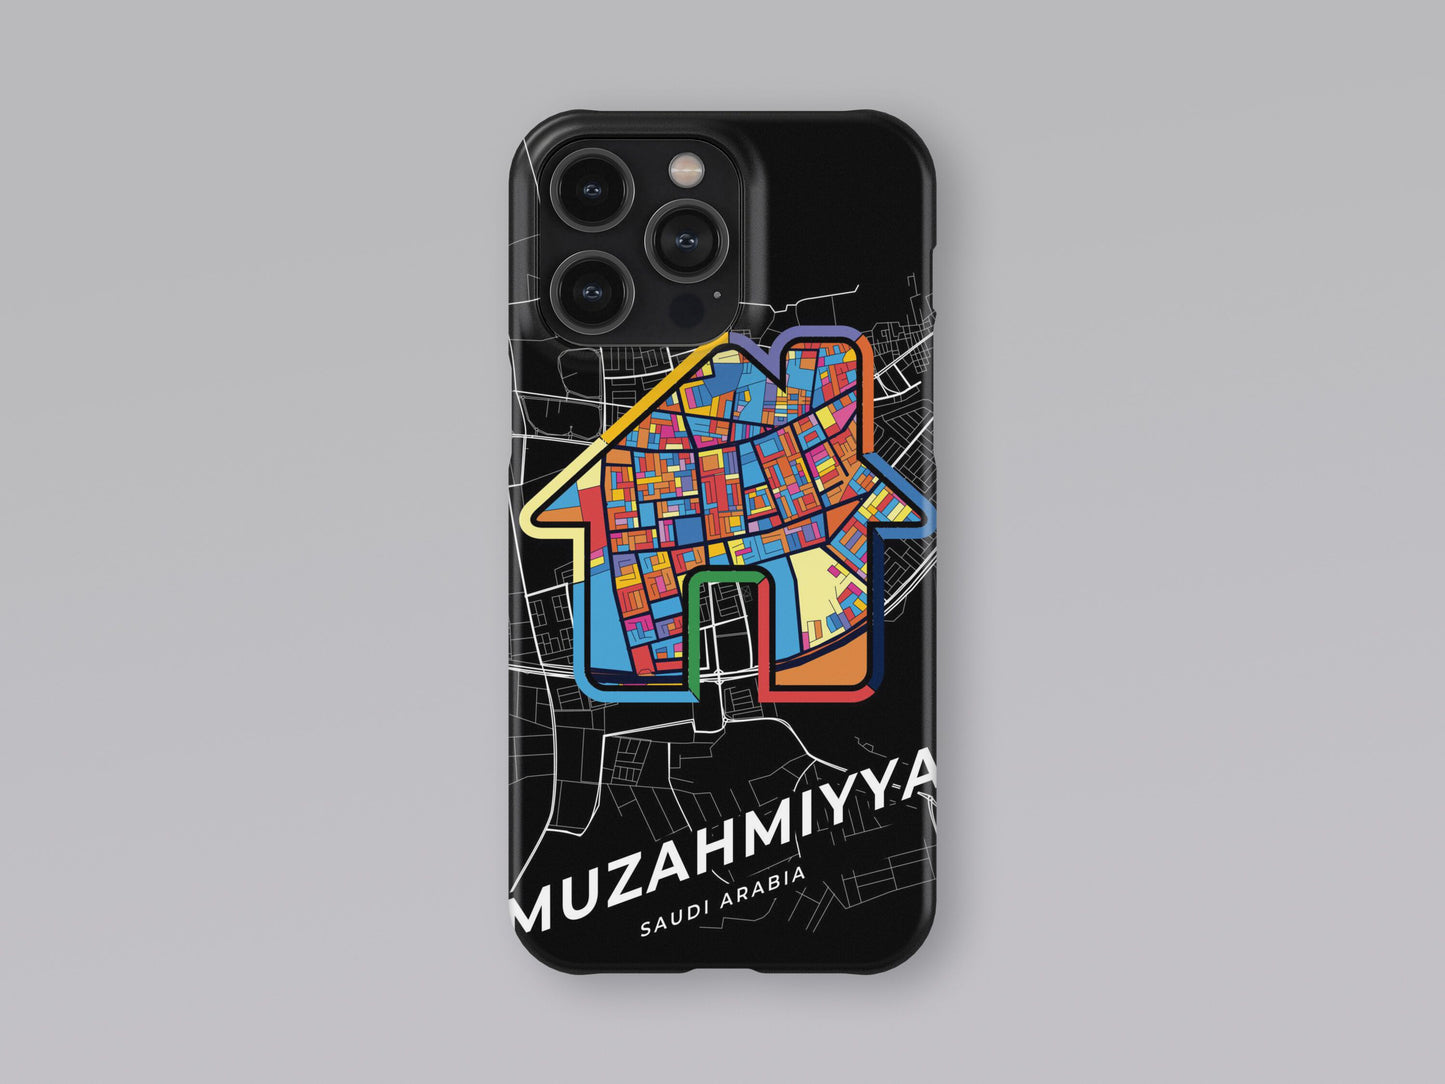 Muzahmiyya Saudi Arabia slim phone case with colorful icon 3